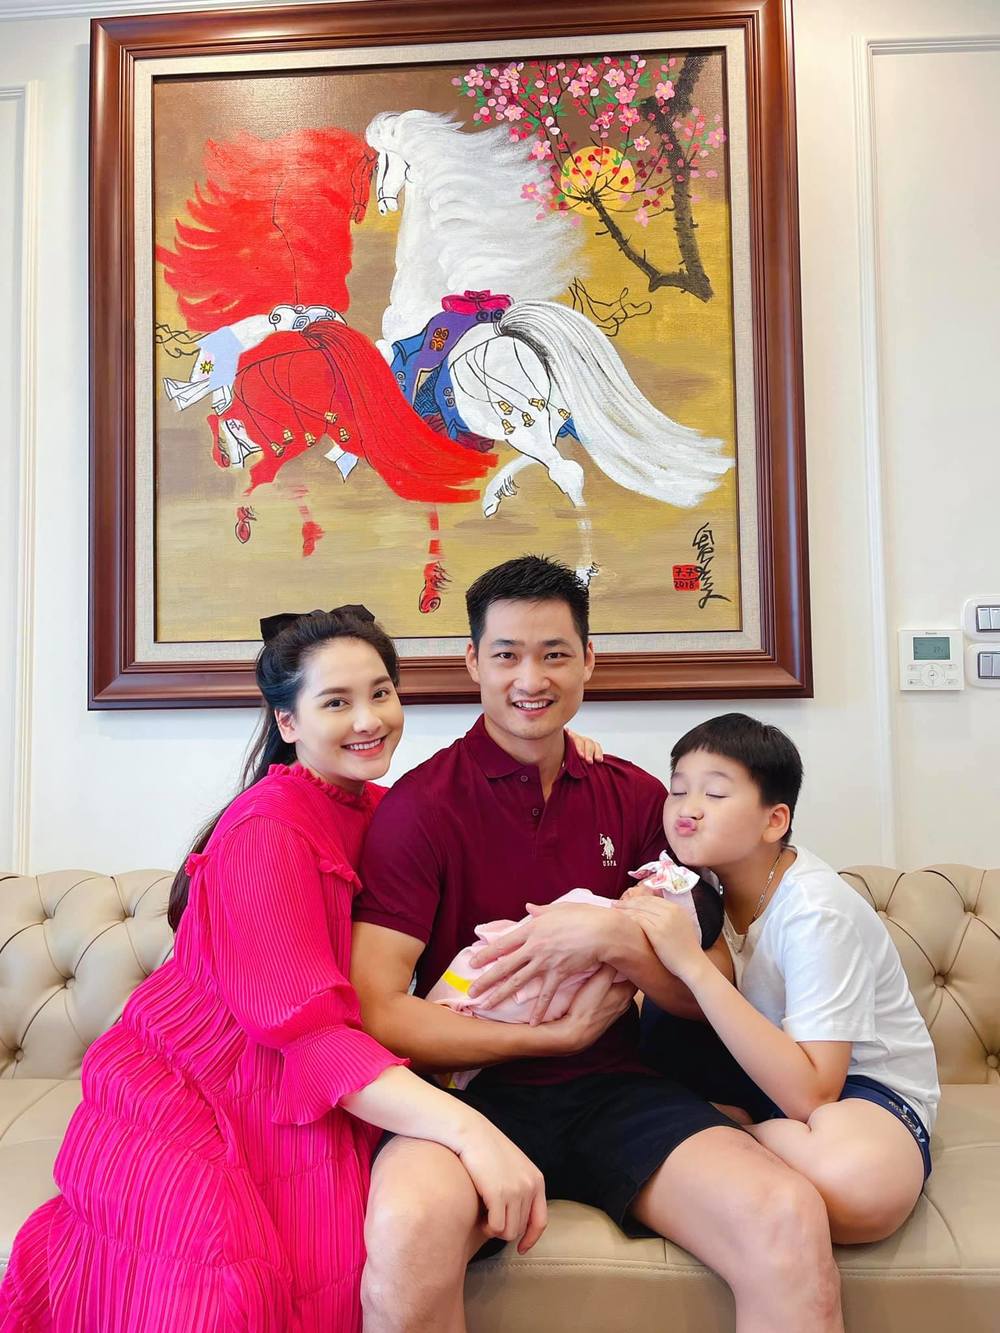  
Bảo Thanh chia sẻ hình ảnh về gia đình nhỏ hạnh phúc của cô cách đây không lâu. (Ảnh: FBNV) - Tin sao Viet - Tin tuc sao Viet - Scandal sao Viet - Tin tuc cua Sao - Tin cua Sao